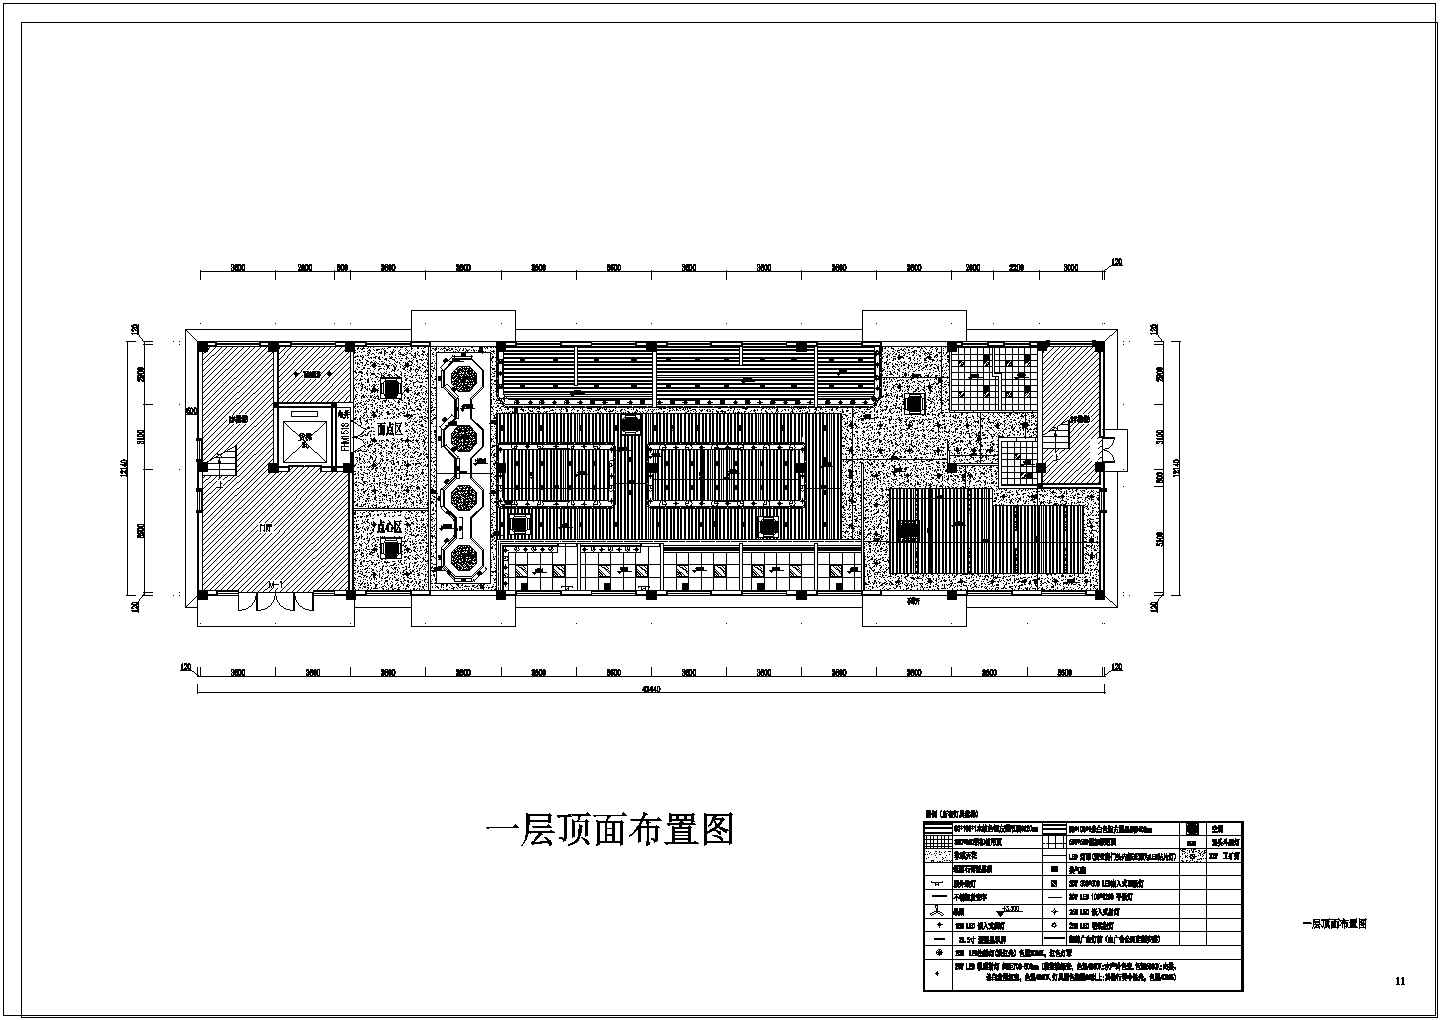 尚阳农贸菜场新建工程--装修设计